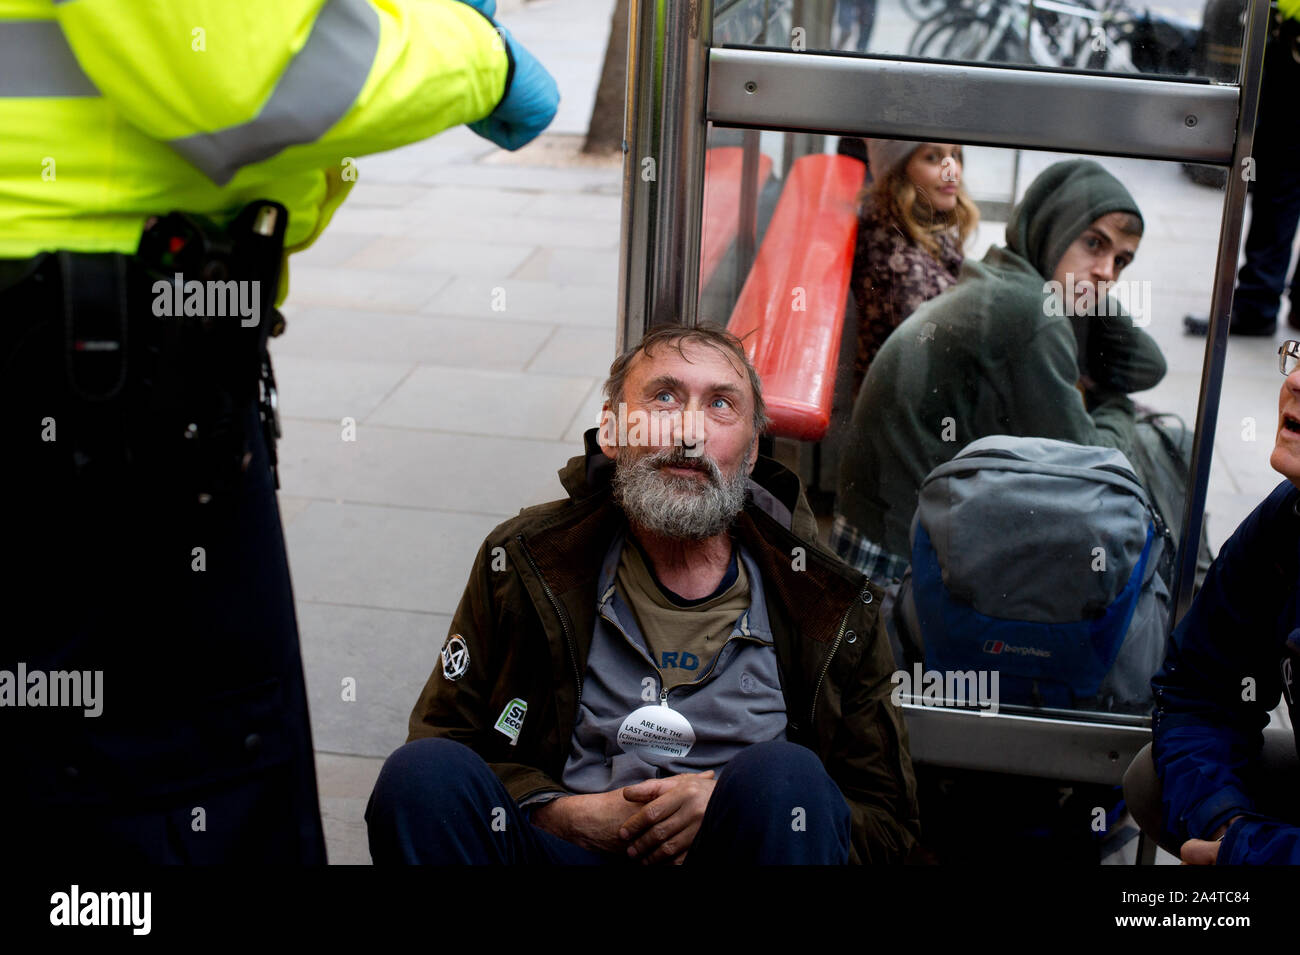 Extinction de la rébellion, Londres, 10 octobre 2019. Trafalgar Square. Militants Arrsted attendre dans un abri bus avant d'être prises pour les cellules de police. Banque D'Images